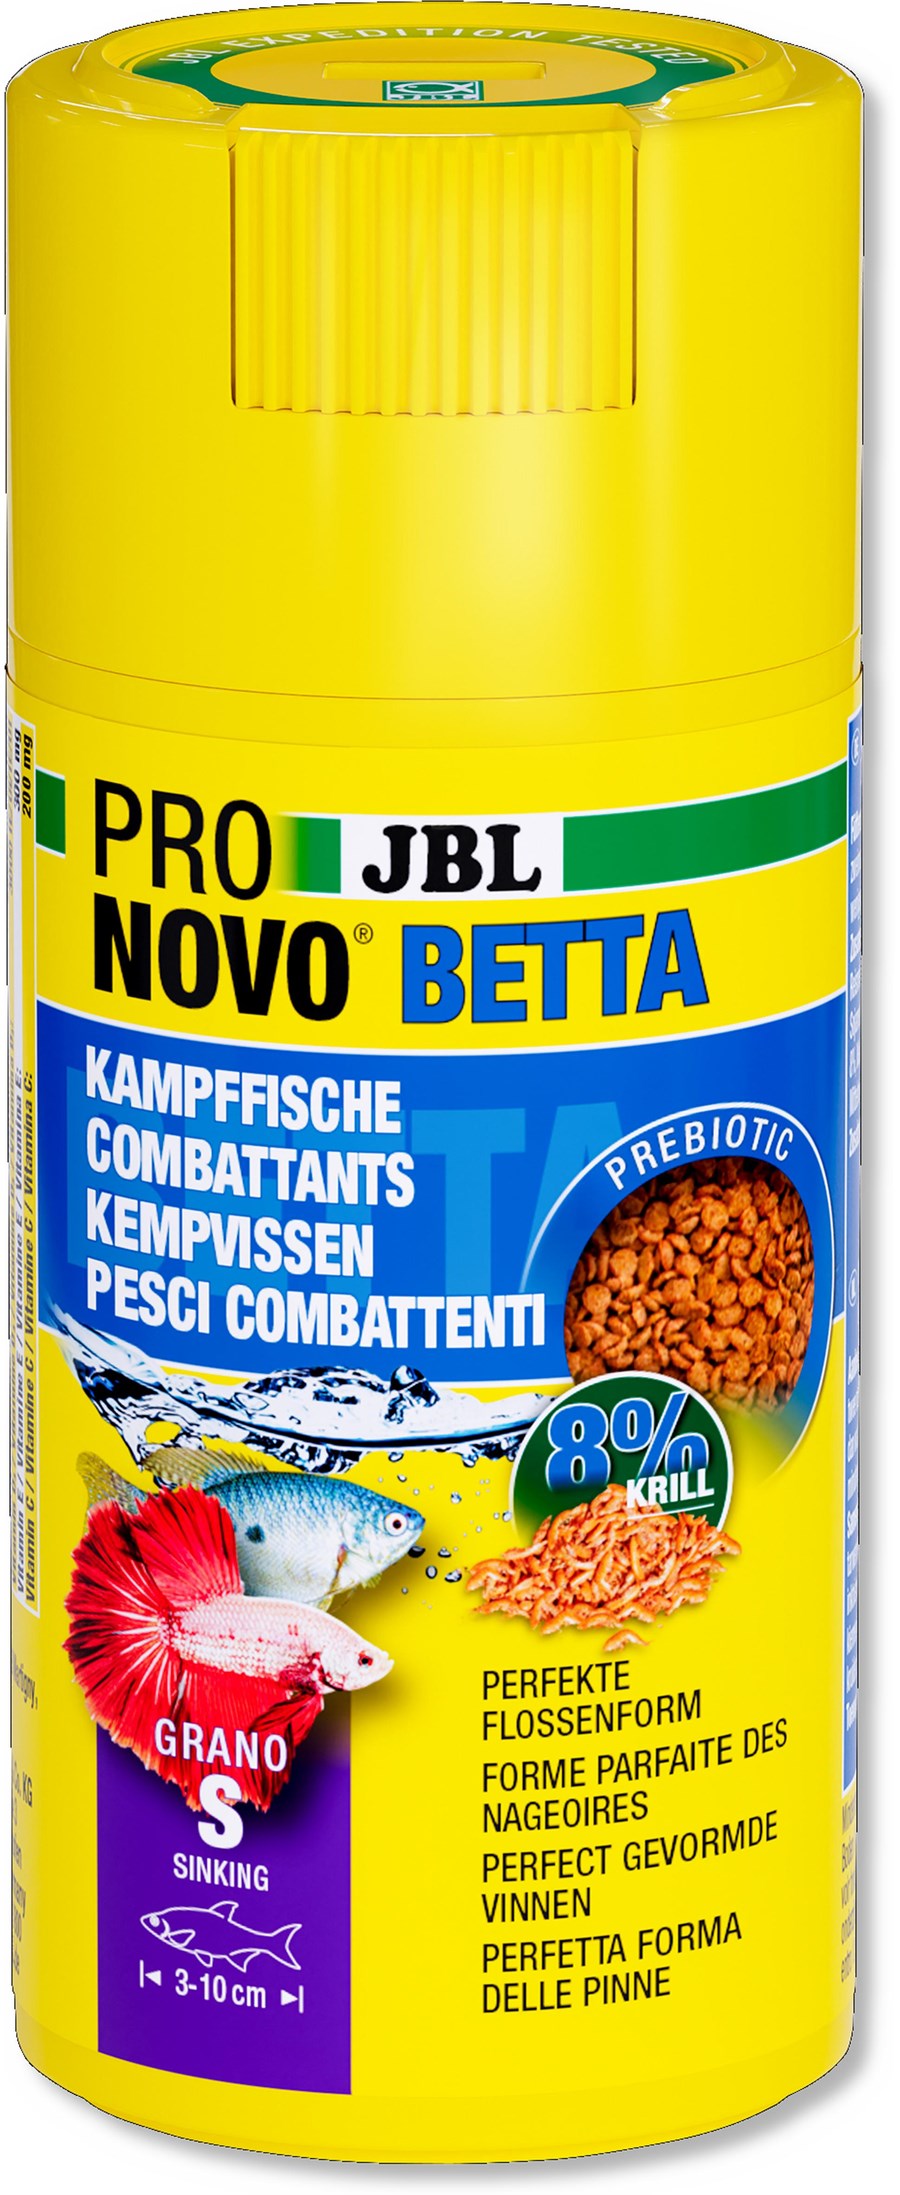 JBL PRONOVO BETTA GRANO S 100ml CLICK